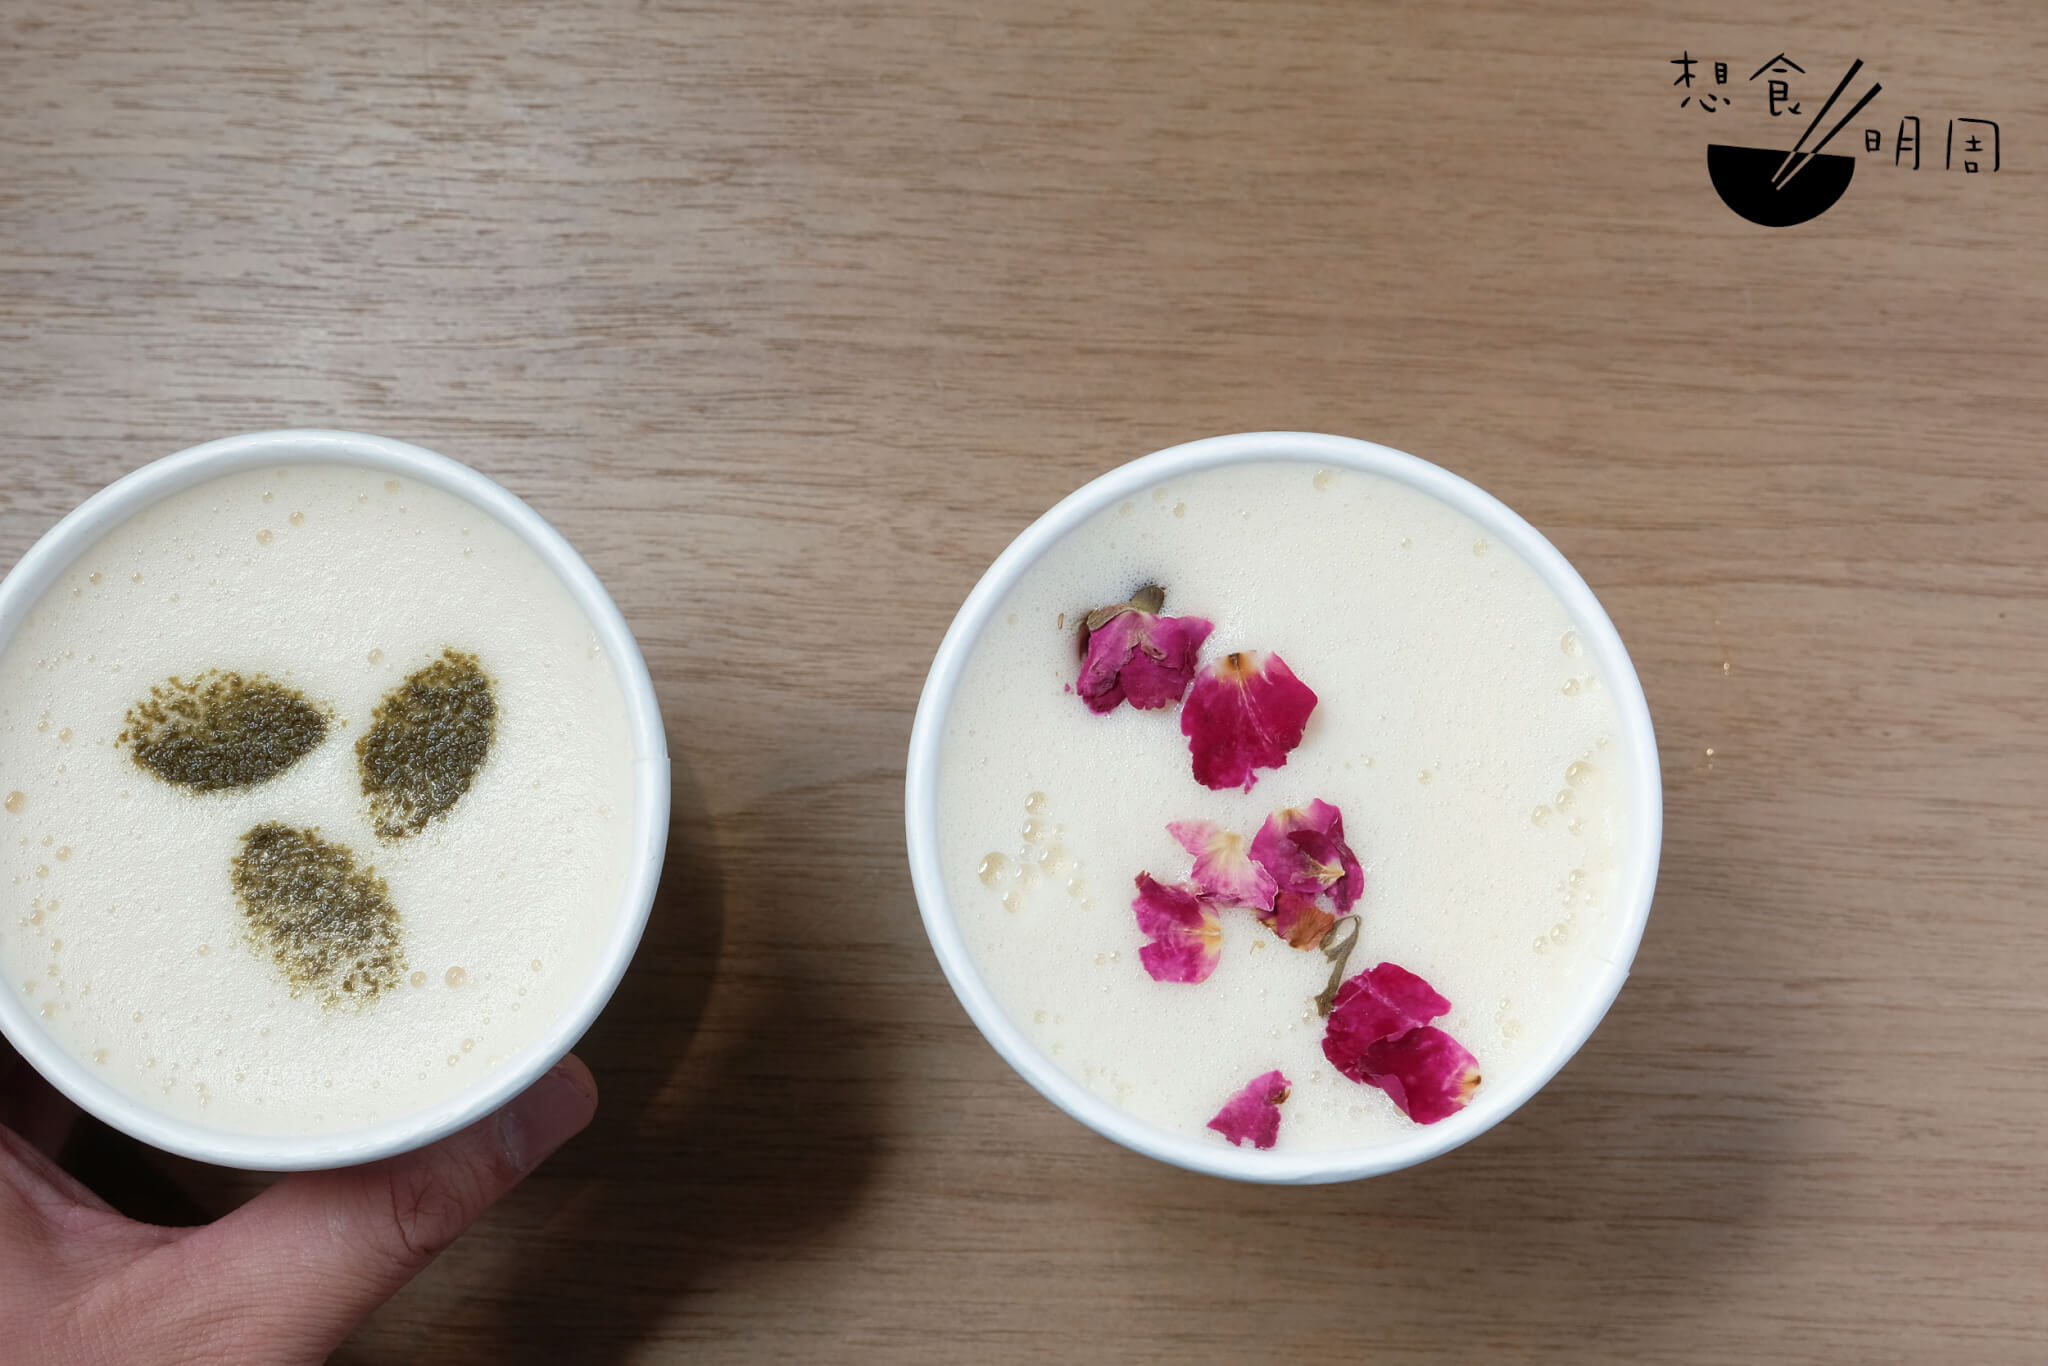 茉莉花茶燕麥奶（$45）、玫瑰綠茶燕麥奶（$45）//茶飲店亦提供熱飲選擇，就像這兩款用燕麥奶調配的特飲，同樣做得清香不過甜。 